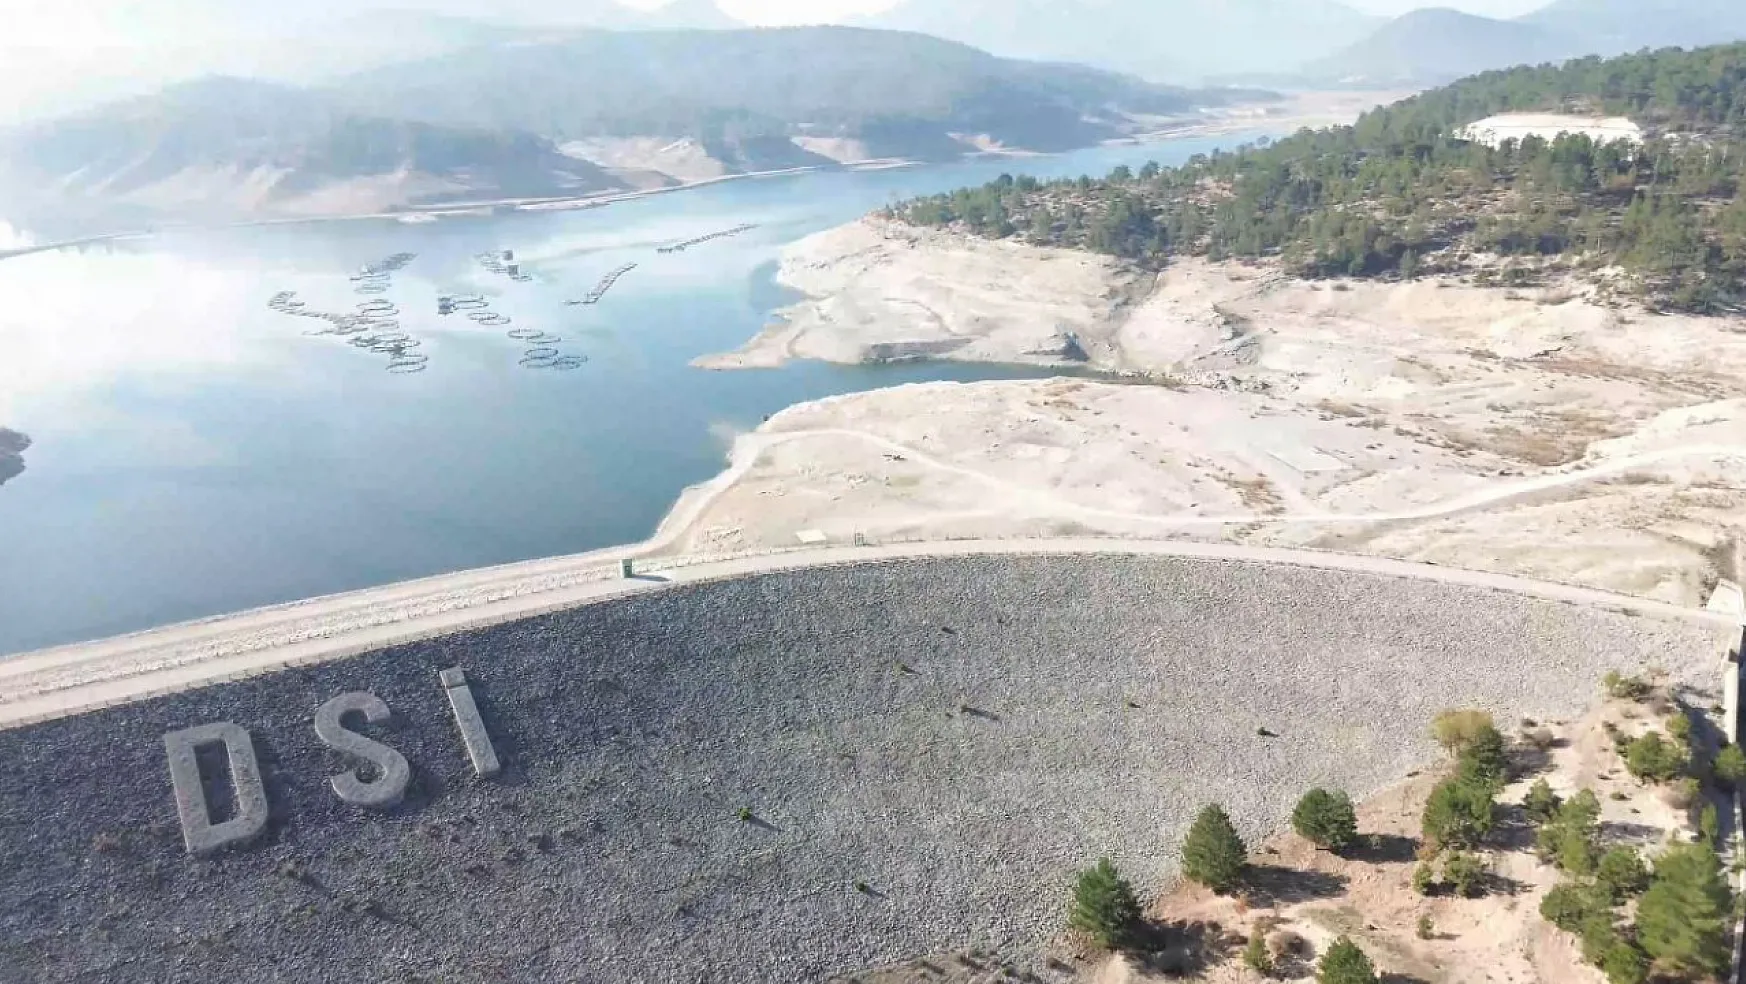 Türkiye'nin en büyük tarım yatırımlarından biri olan Yapraklı Barajı projesi yapımına başlandı